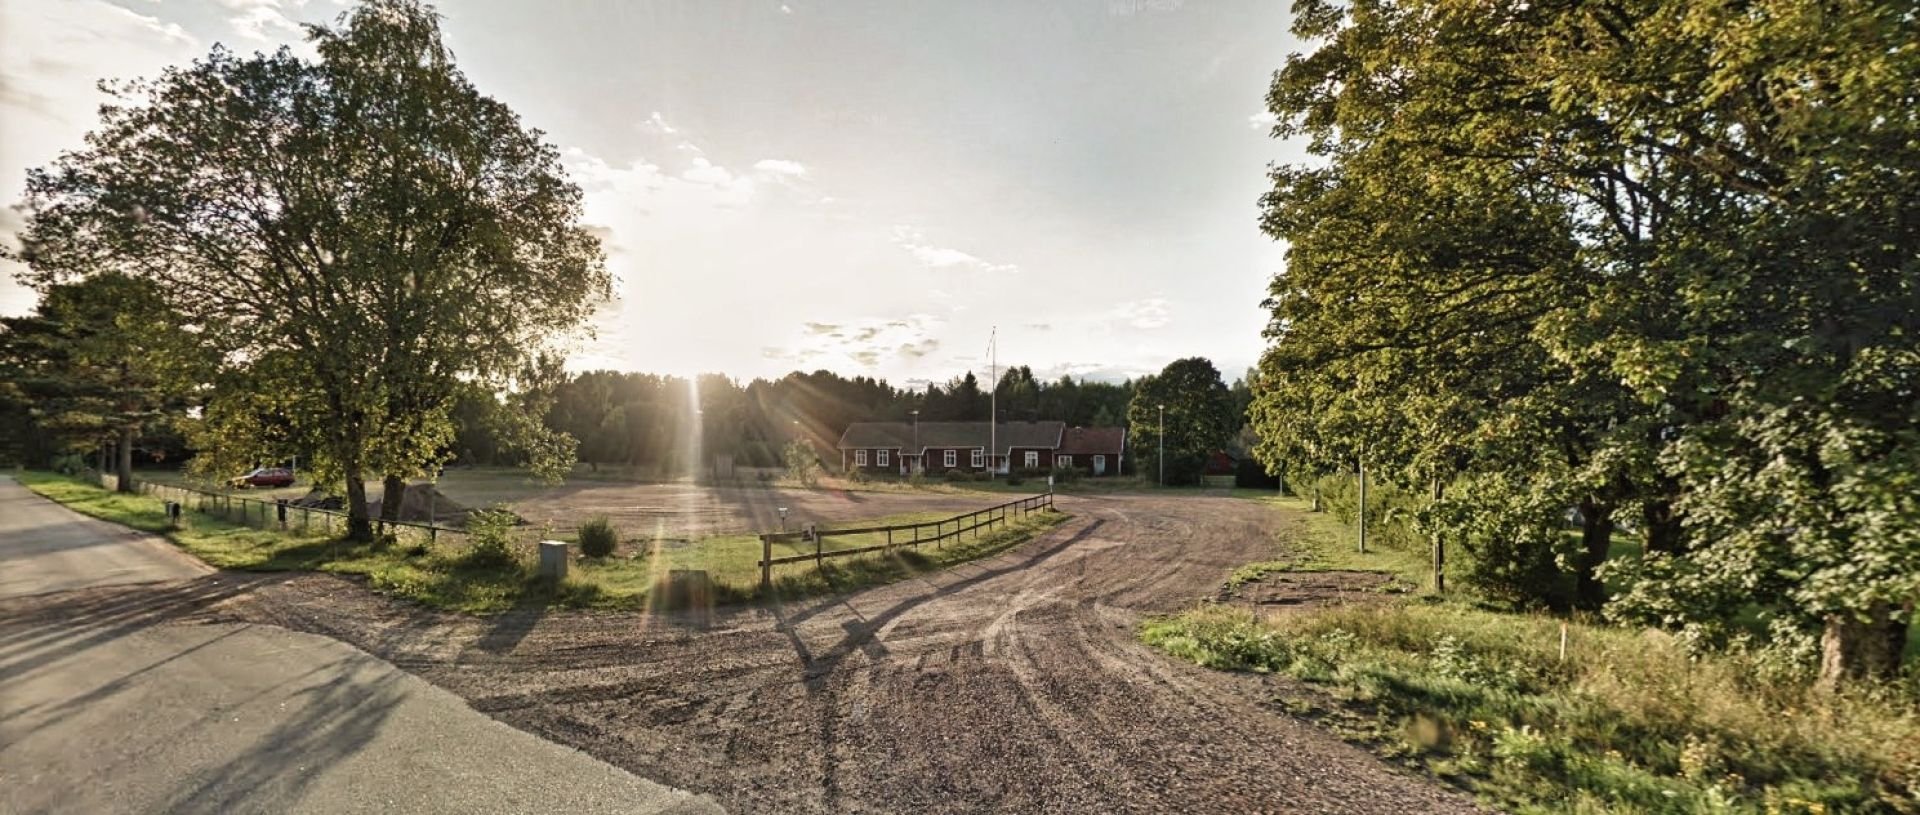 I Nybble söder om Kristinehamn längs Rv 26 finns en ställplats för husbil vid den g:a skolan.